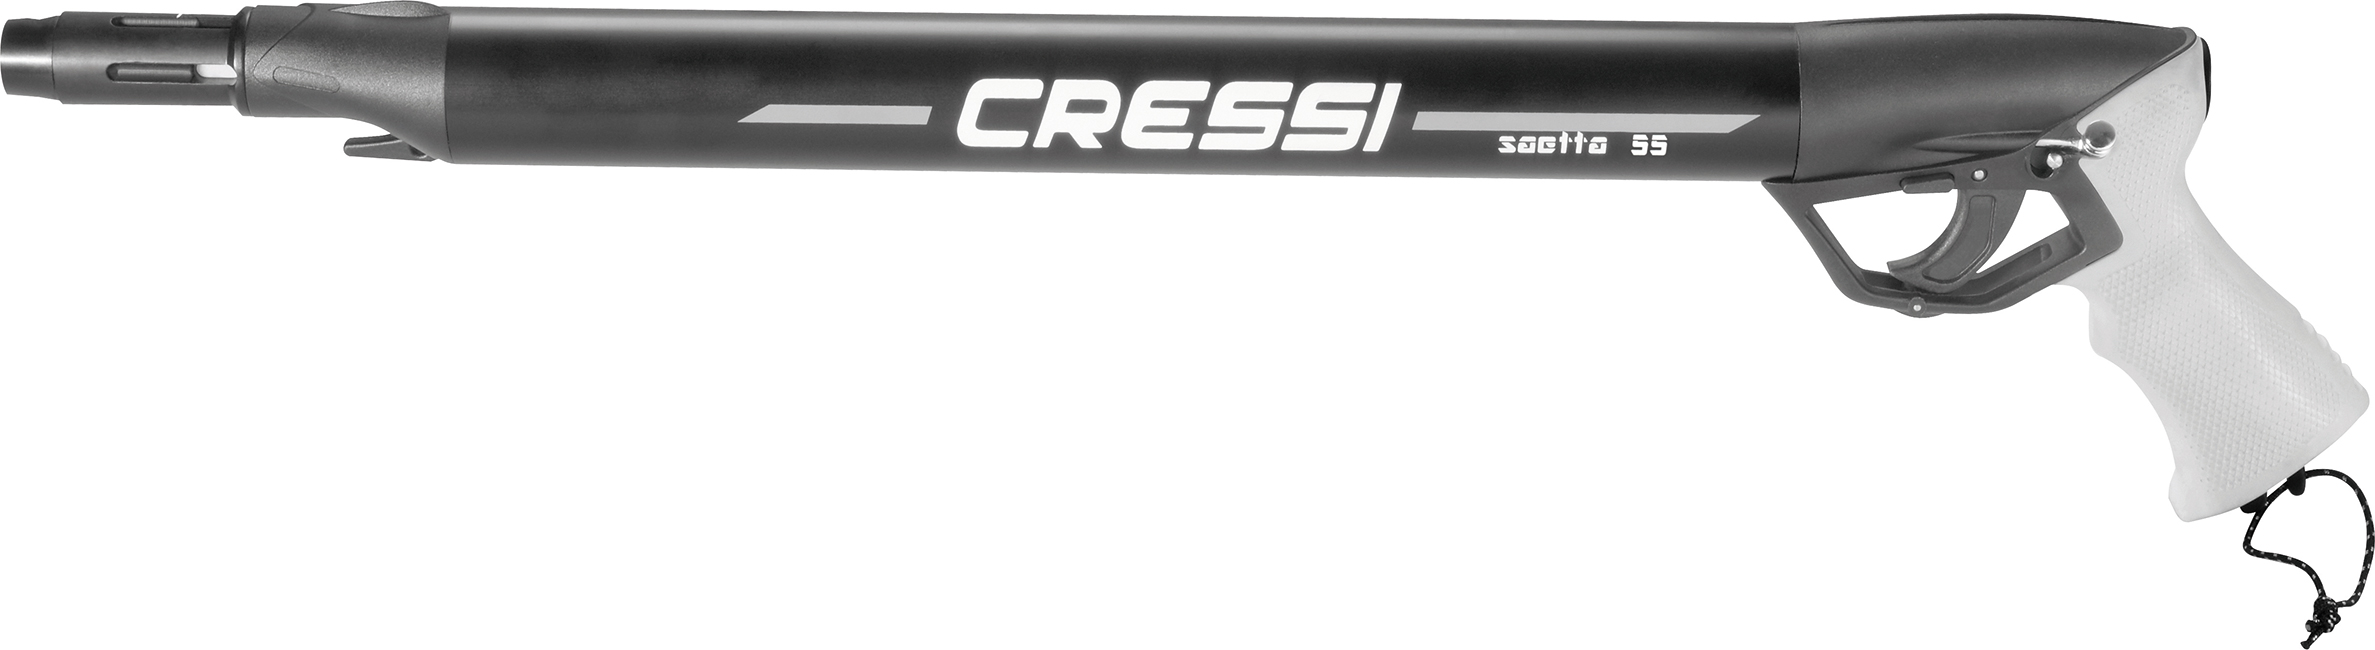 Cressi - Pneumatic Spear Guns